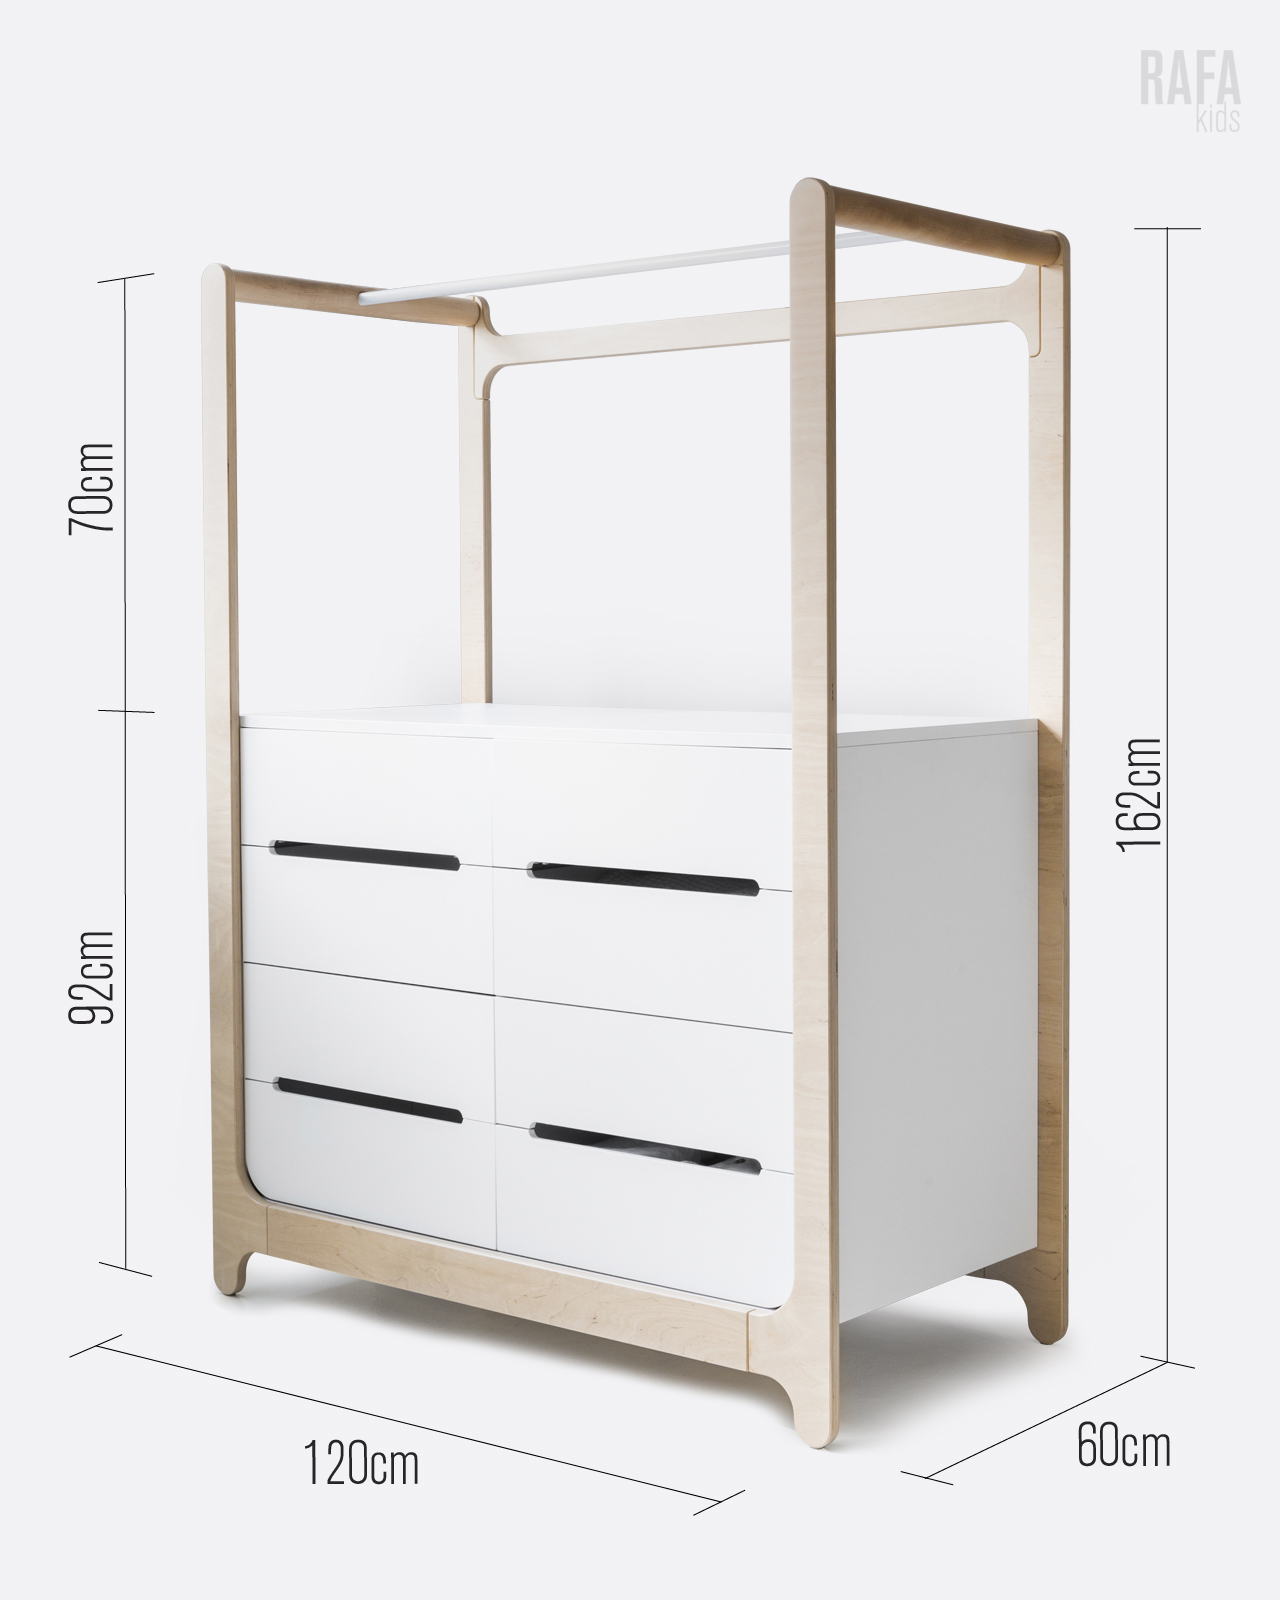 Rafa Kids H Dresser Designer Furniture For Children S Room